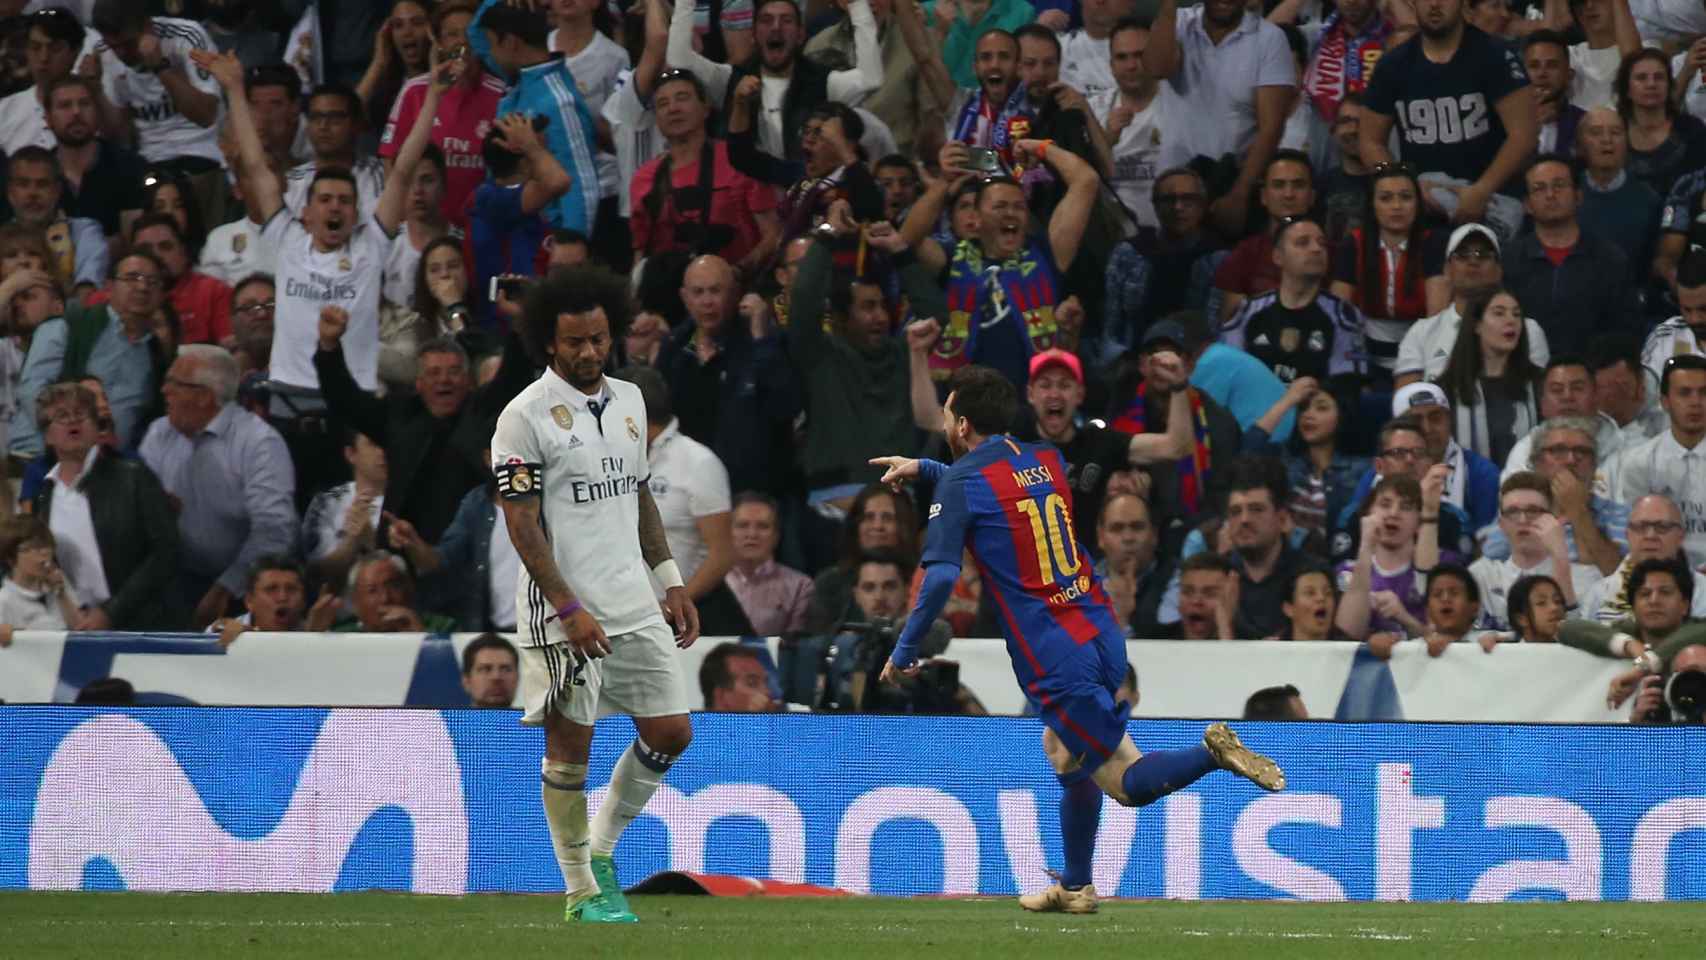 Leo Messi celebra su segundo gol con los aficionados culés presentes en el Bernabéu.